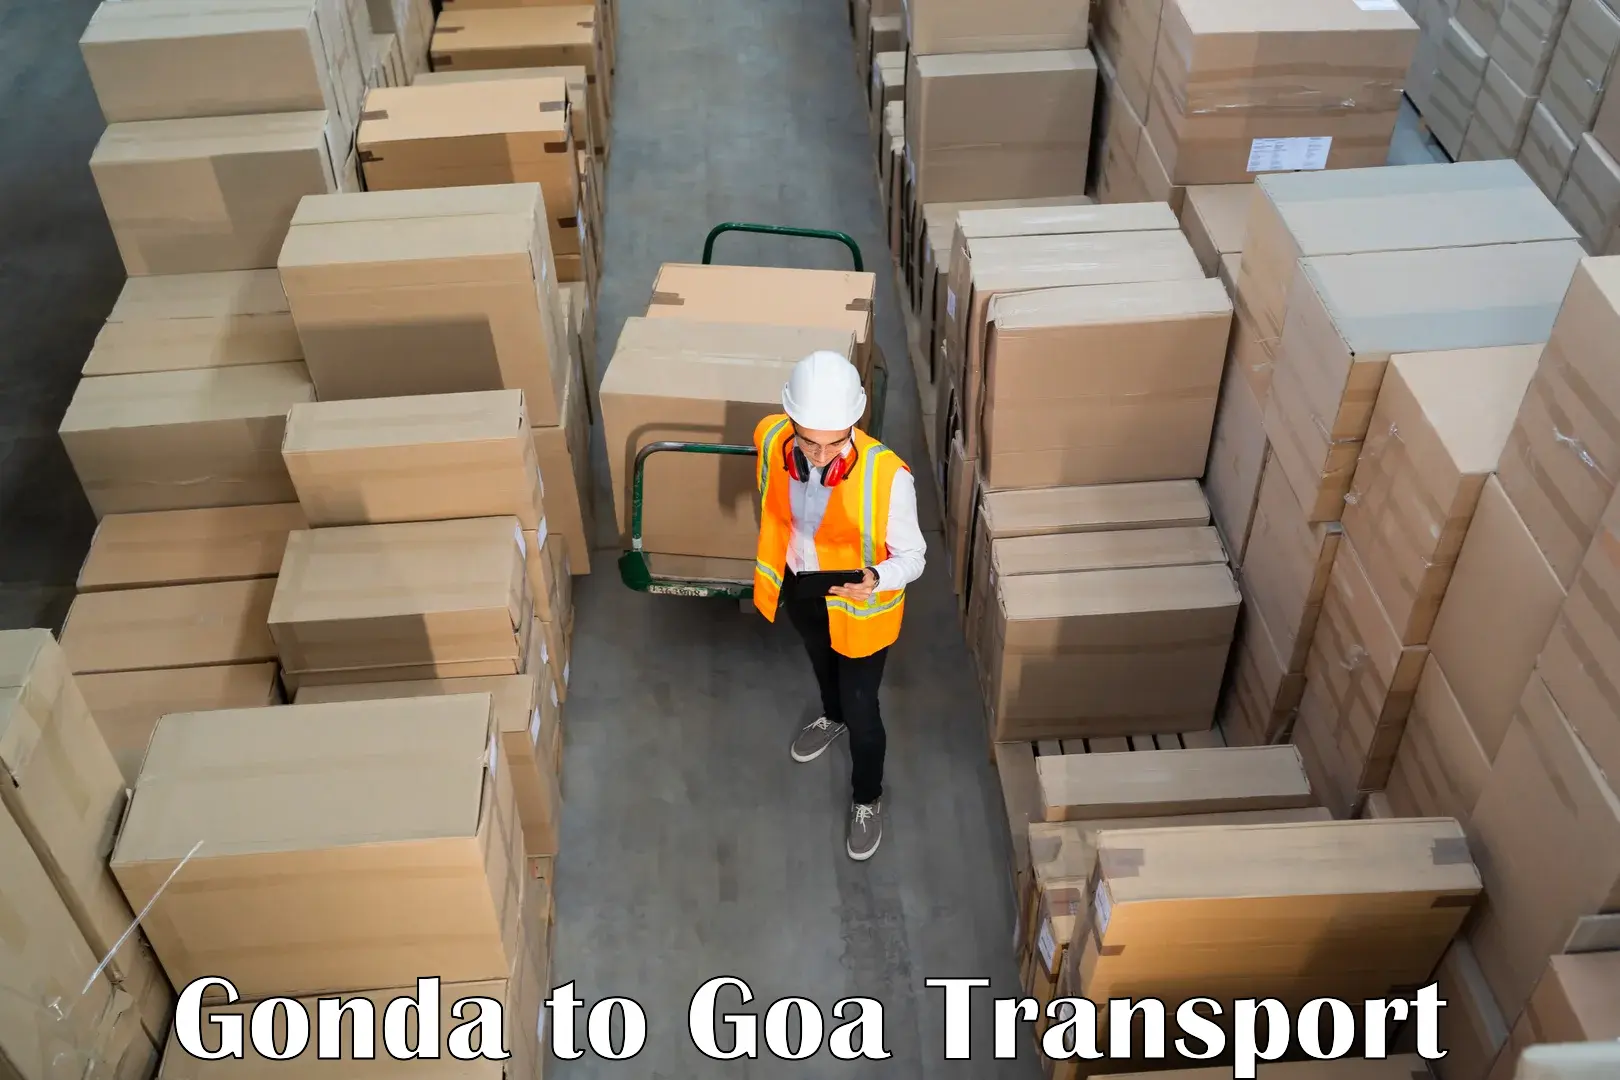 Pick up transport service Gonda to Bardez